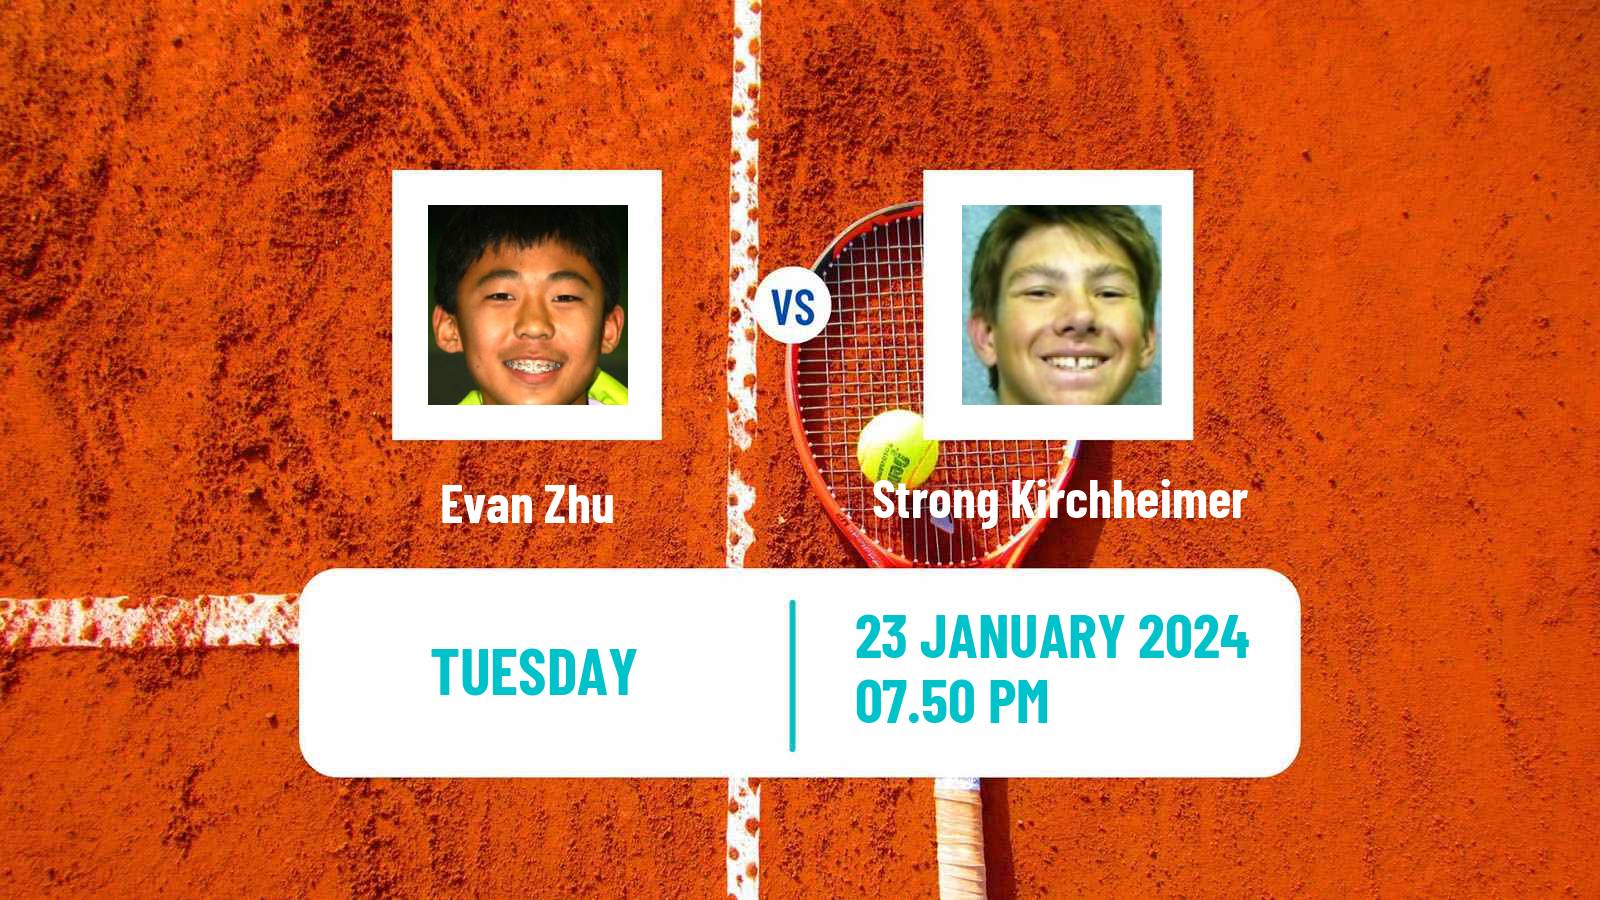 Tennis Indian Wells 2 Challenger Men Evan Zhu - Strong Kirchheimer